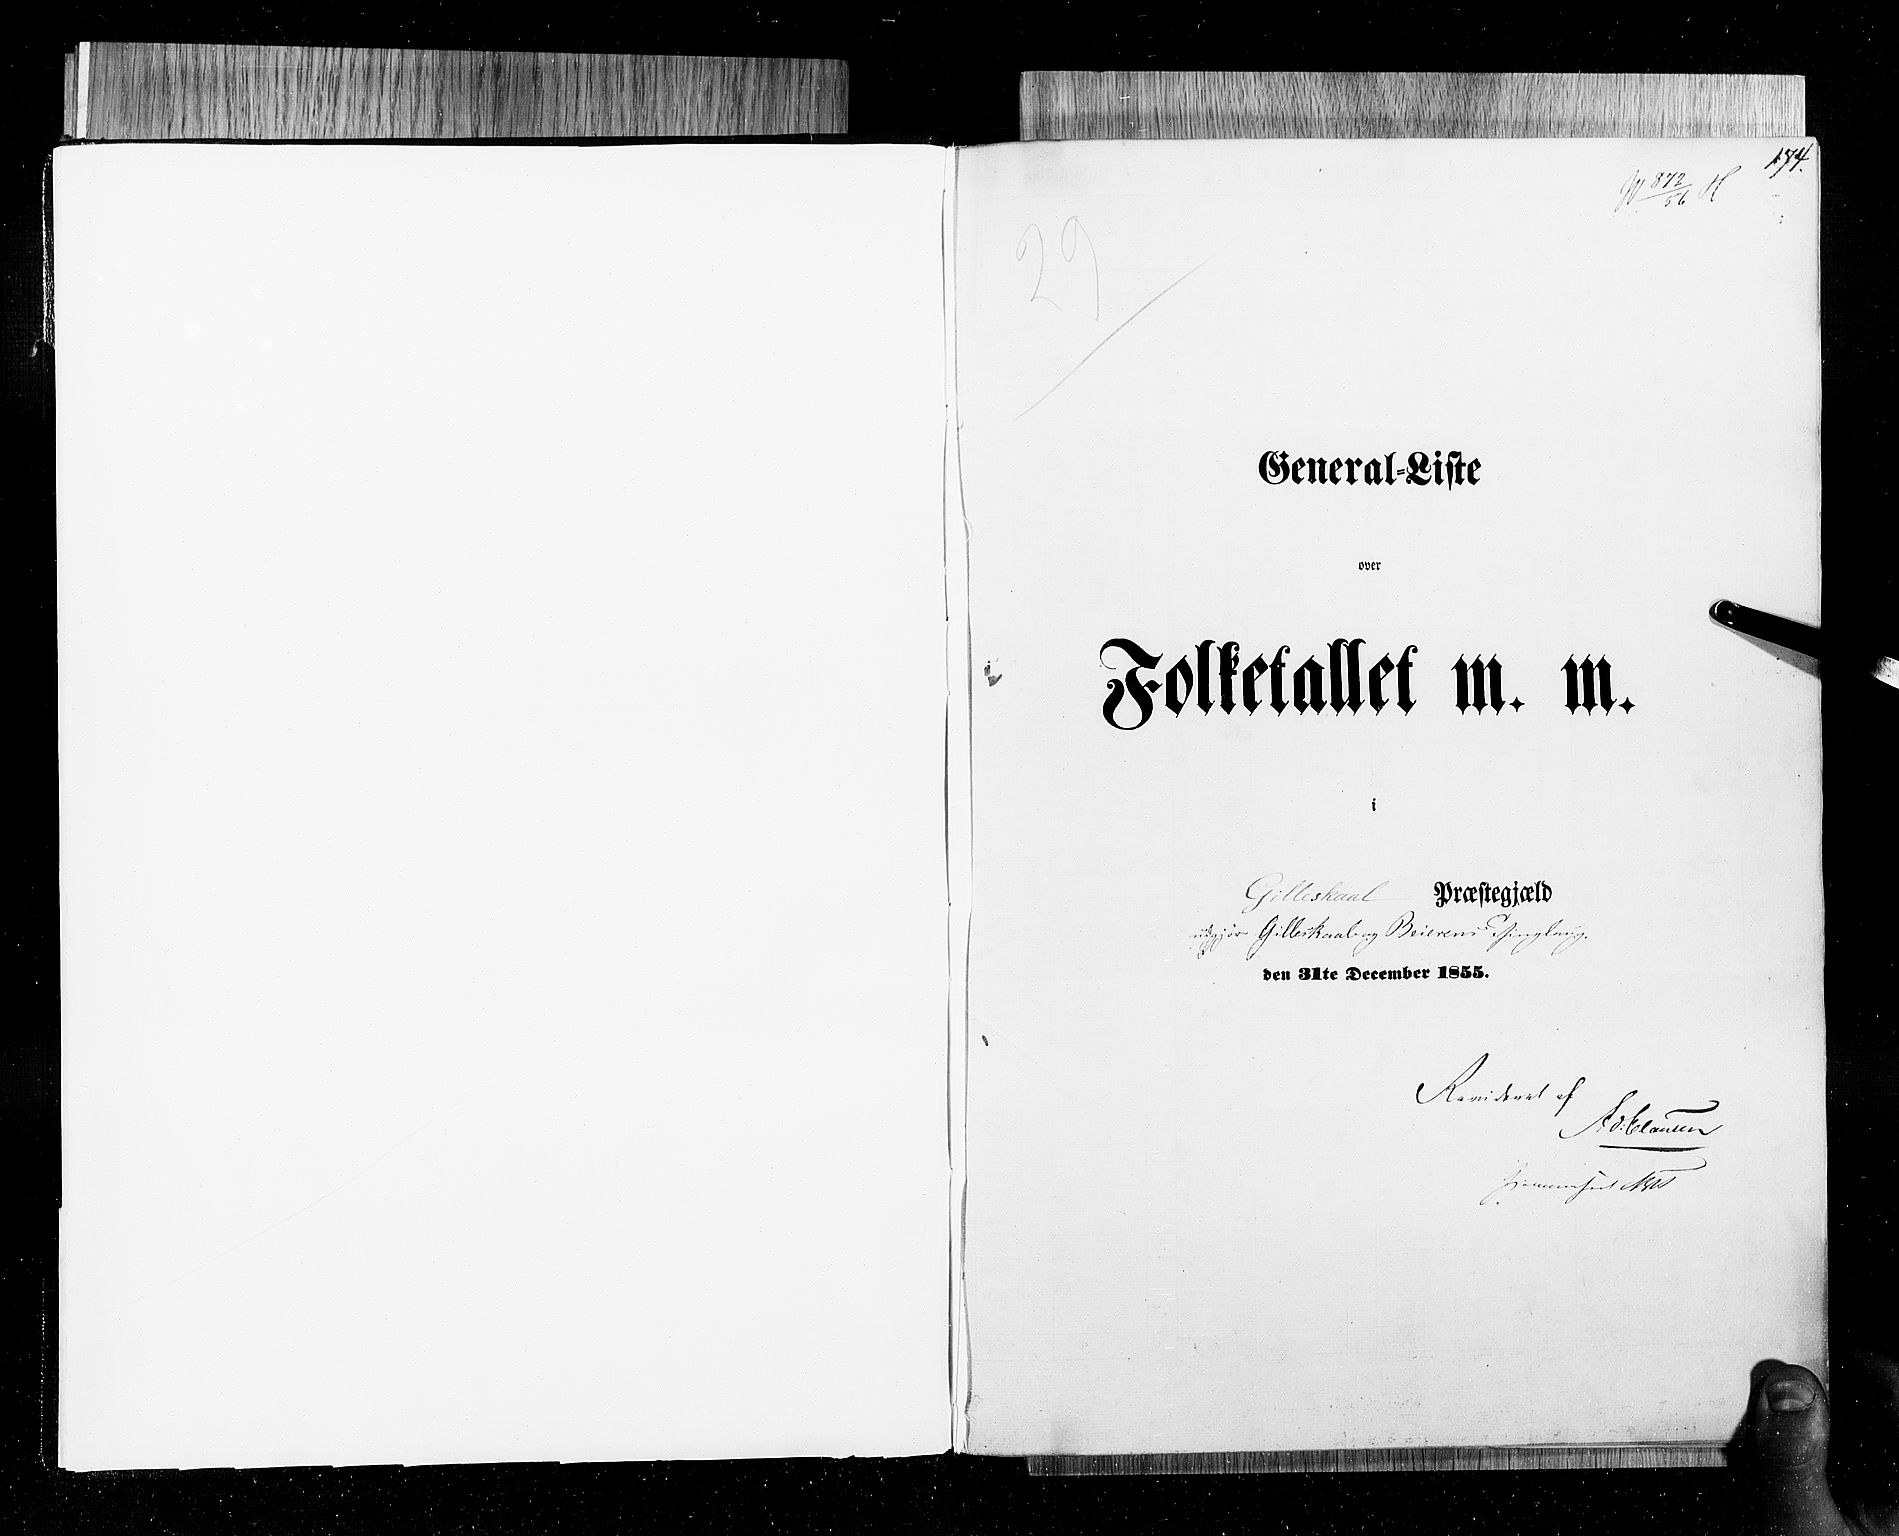 RA, Census 1855, vol. 6B: Nordland amt og Finnmarken amt, 1855, p. 174